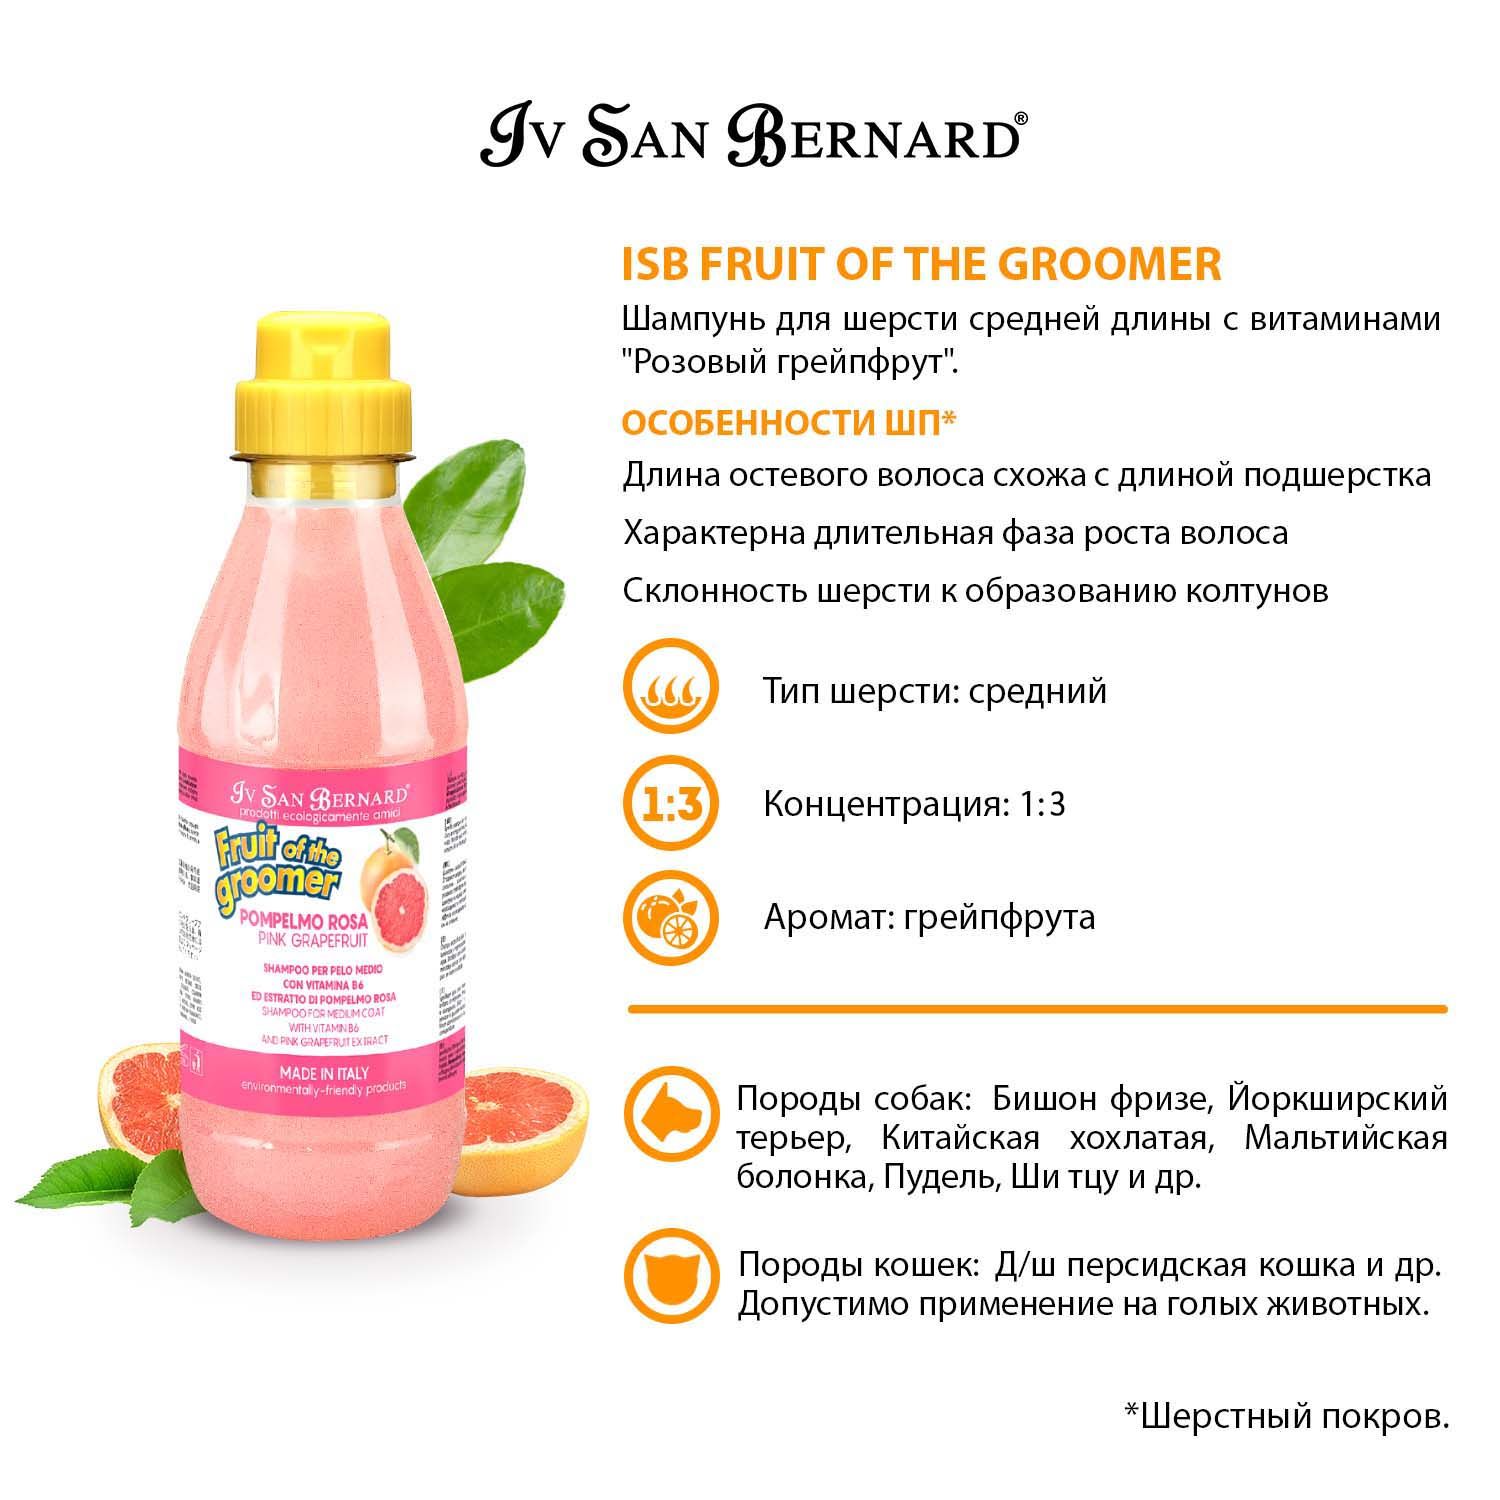 Шампунь Iv San Bernard Fruit of the Groomer Pink Grapefruit для шерсти средней длины с витаминами, для кошек и собак 4